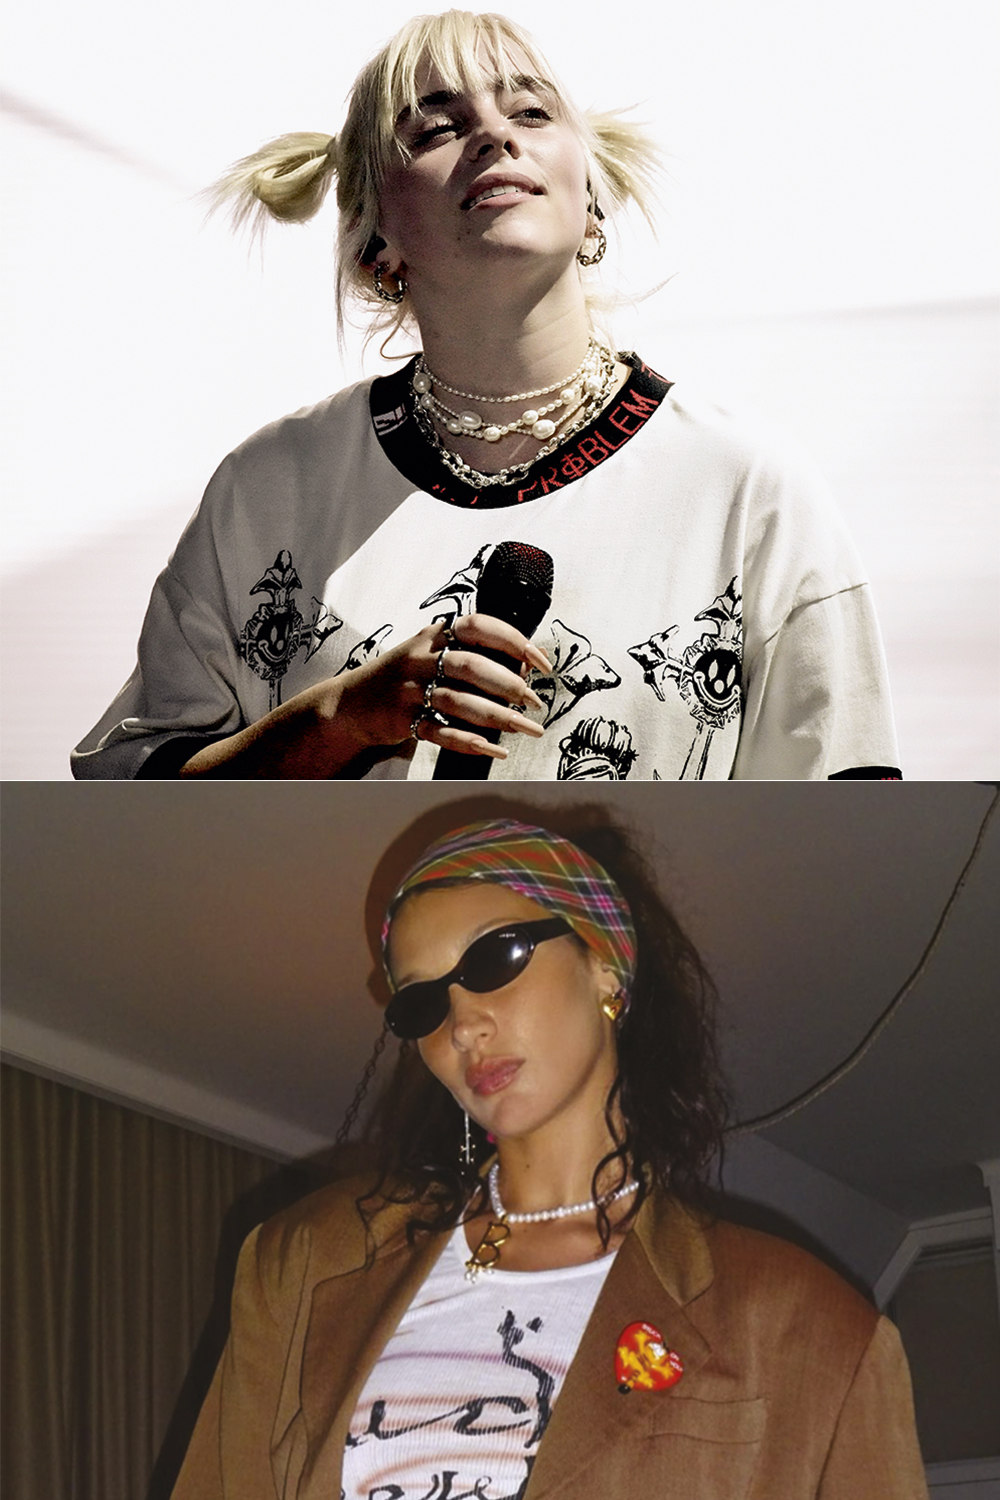 APENAS UM TOQUE - Informal: Billie Eilish (acima) e a modelo Bella Hadid adoram sobrepor colares para compor um visual despojado, mas nem tanto -